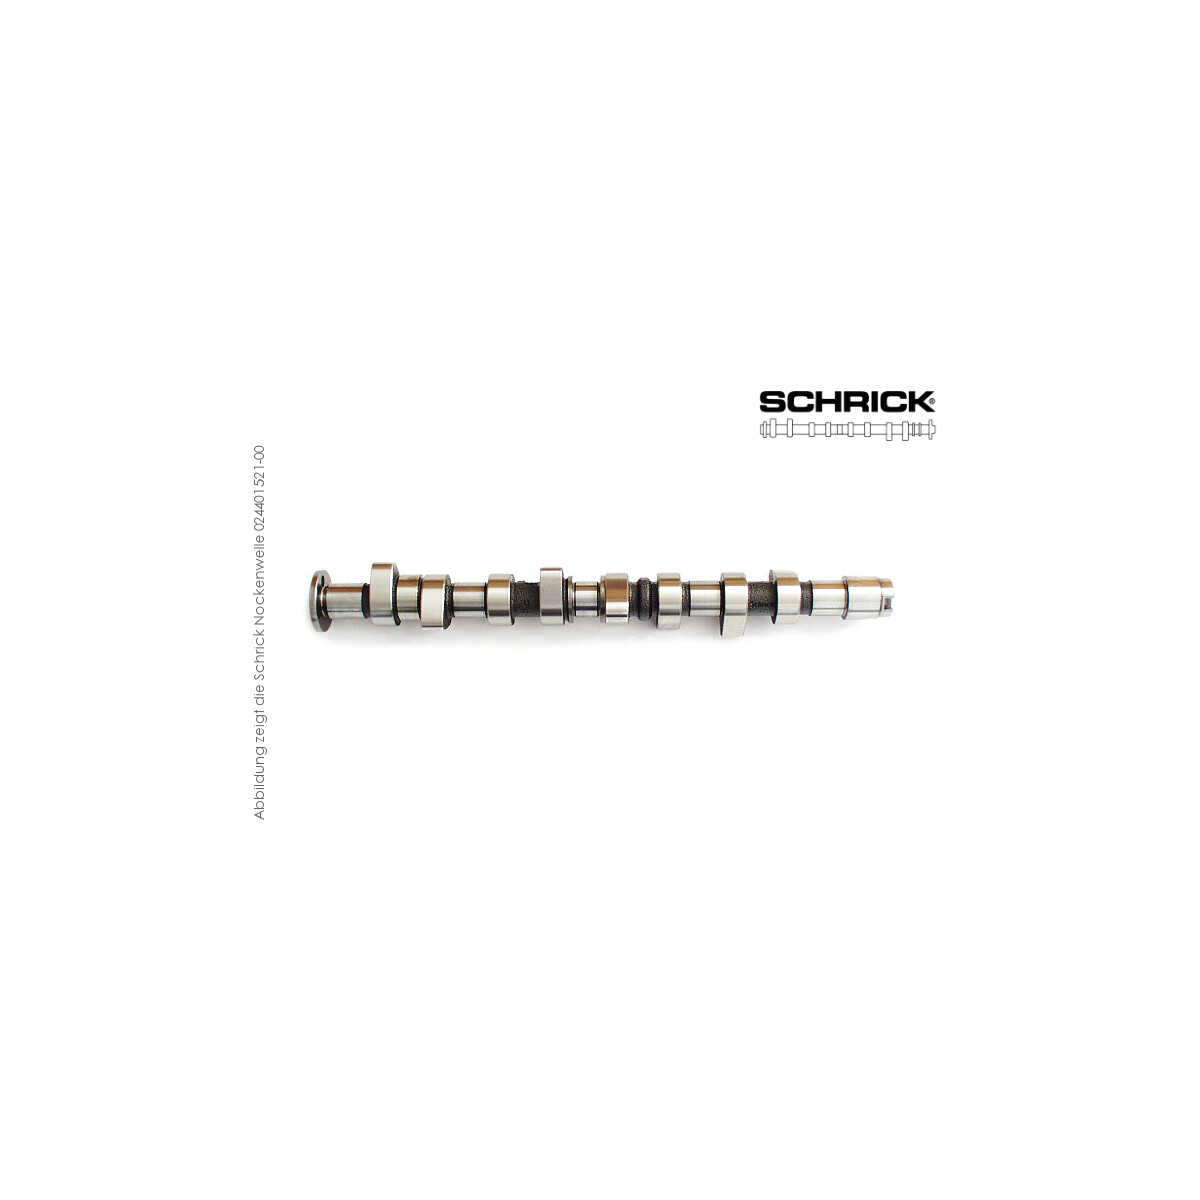 Schrick Nockenwelle für Porsche 911 (Typ 996), Boxster | 3,4L / 2,5L 24V 6-Zyl.  | 264° Auslassnockenwelle (Schrick 0319A1641-R0)